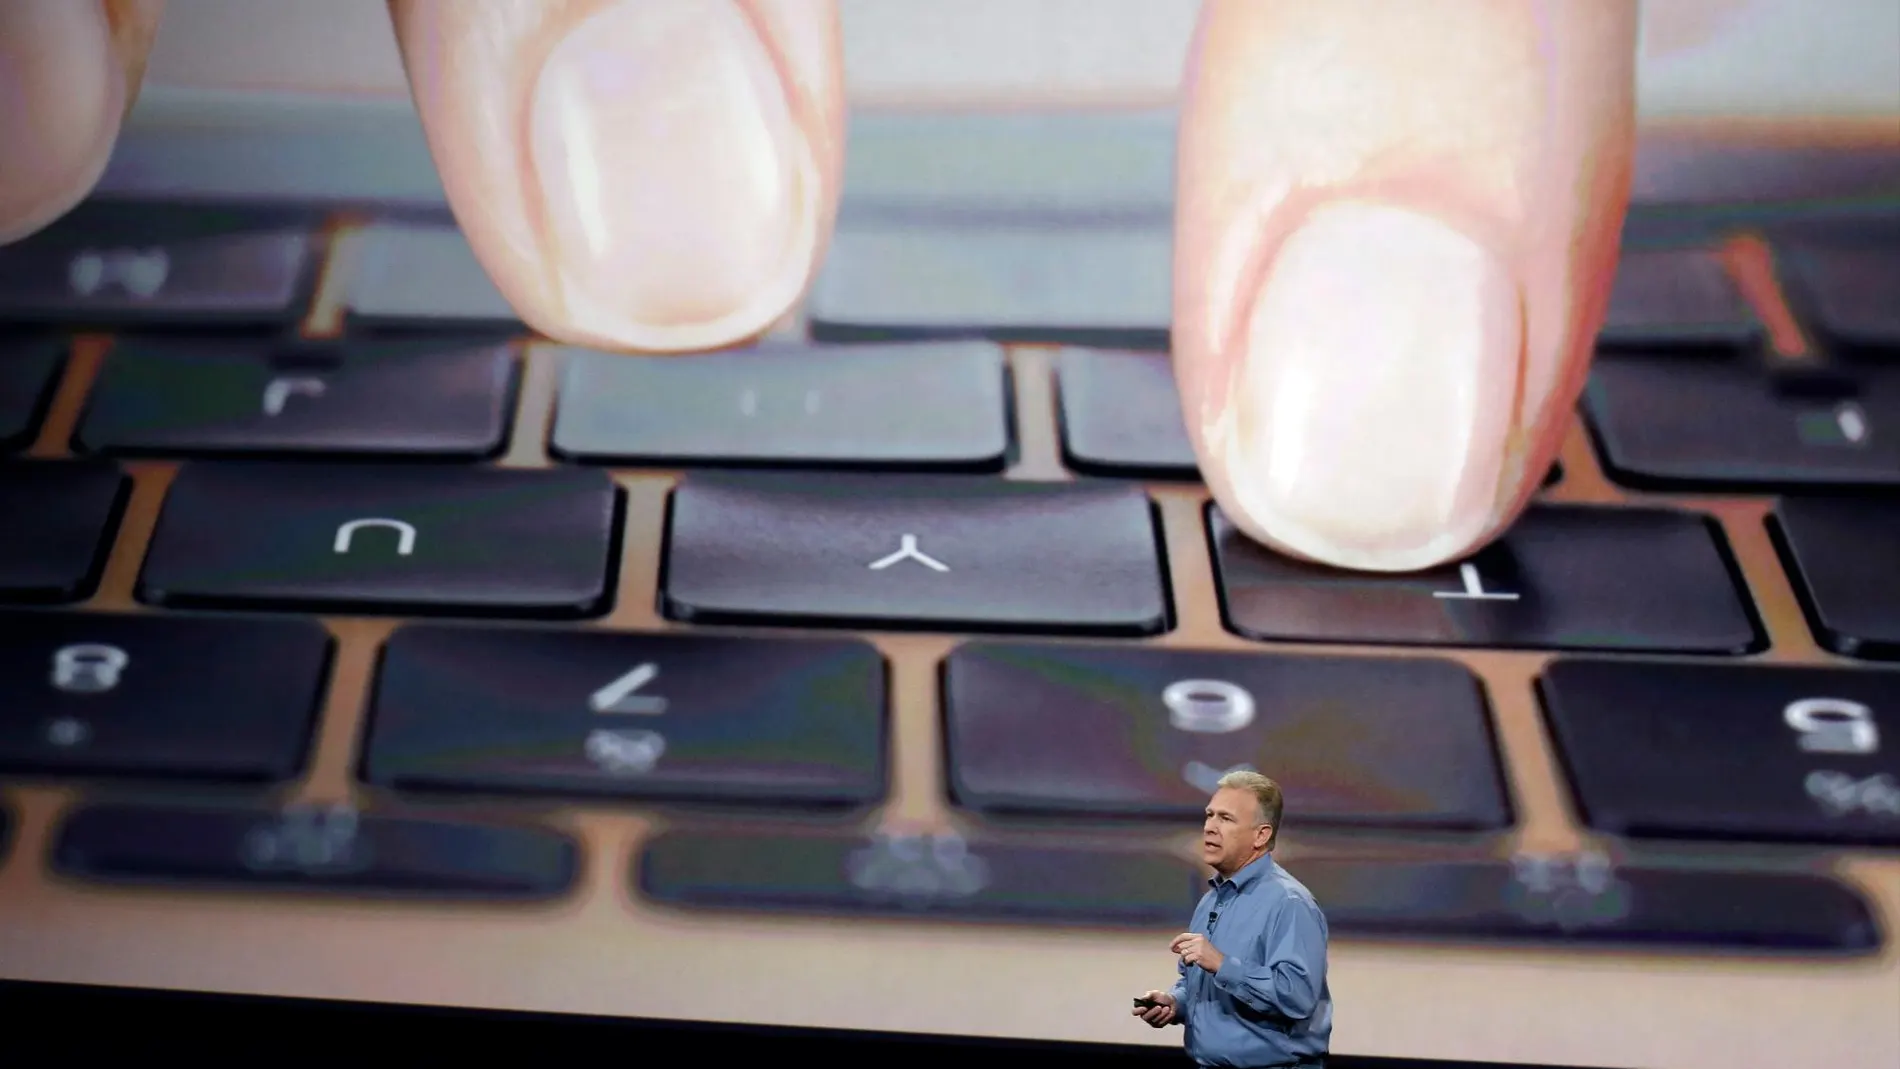 El macBook, durante su presentación en 2015 / AP